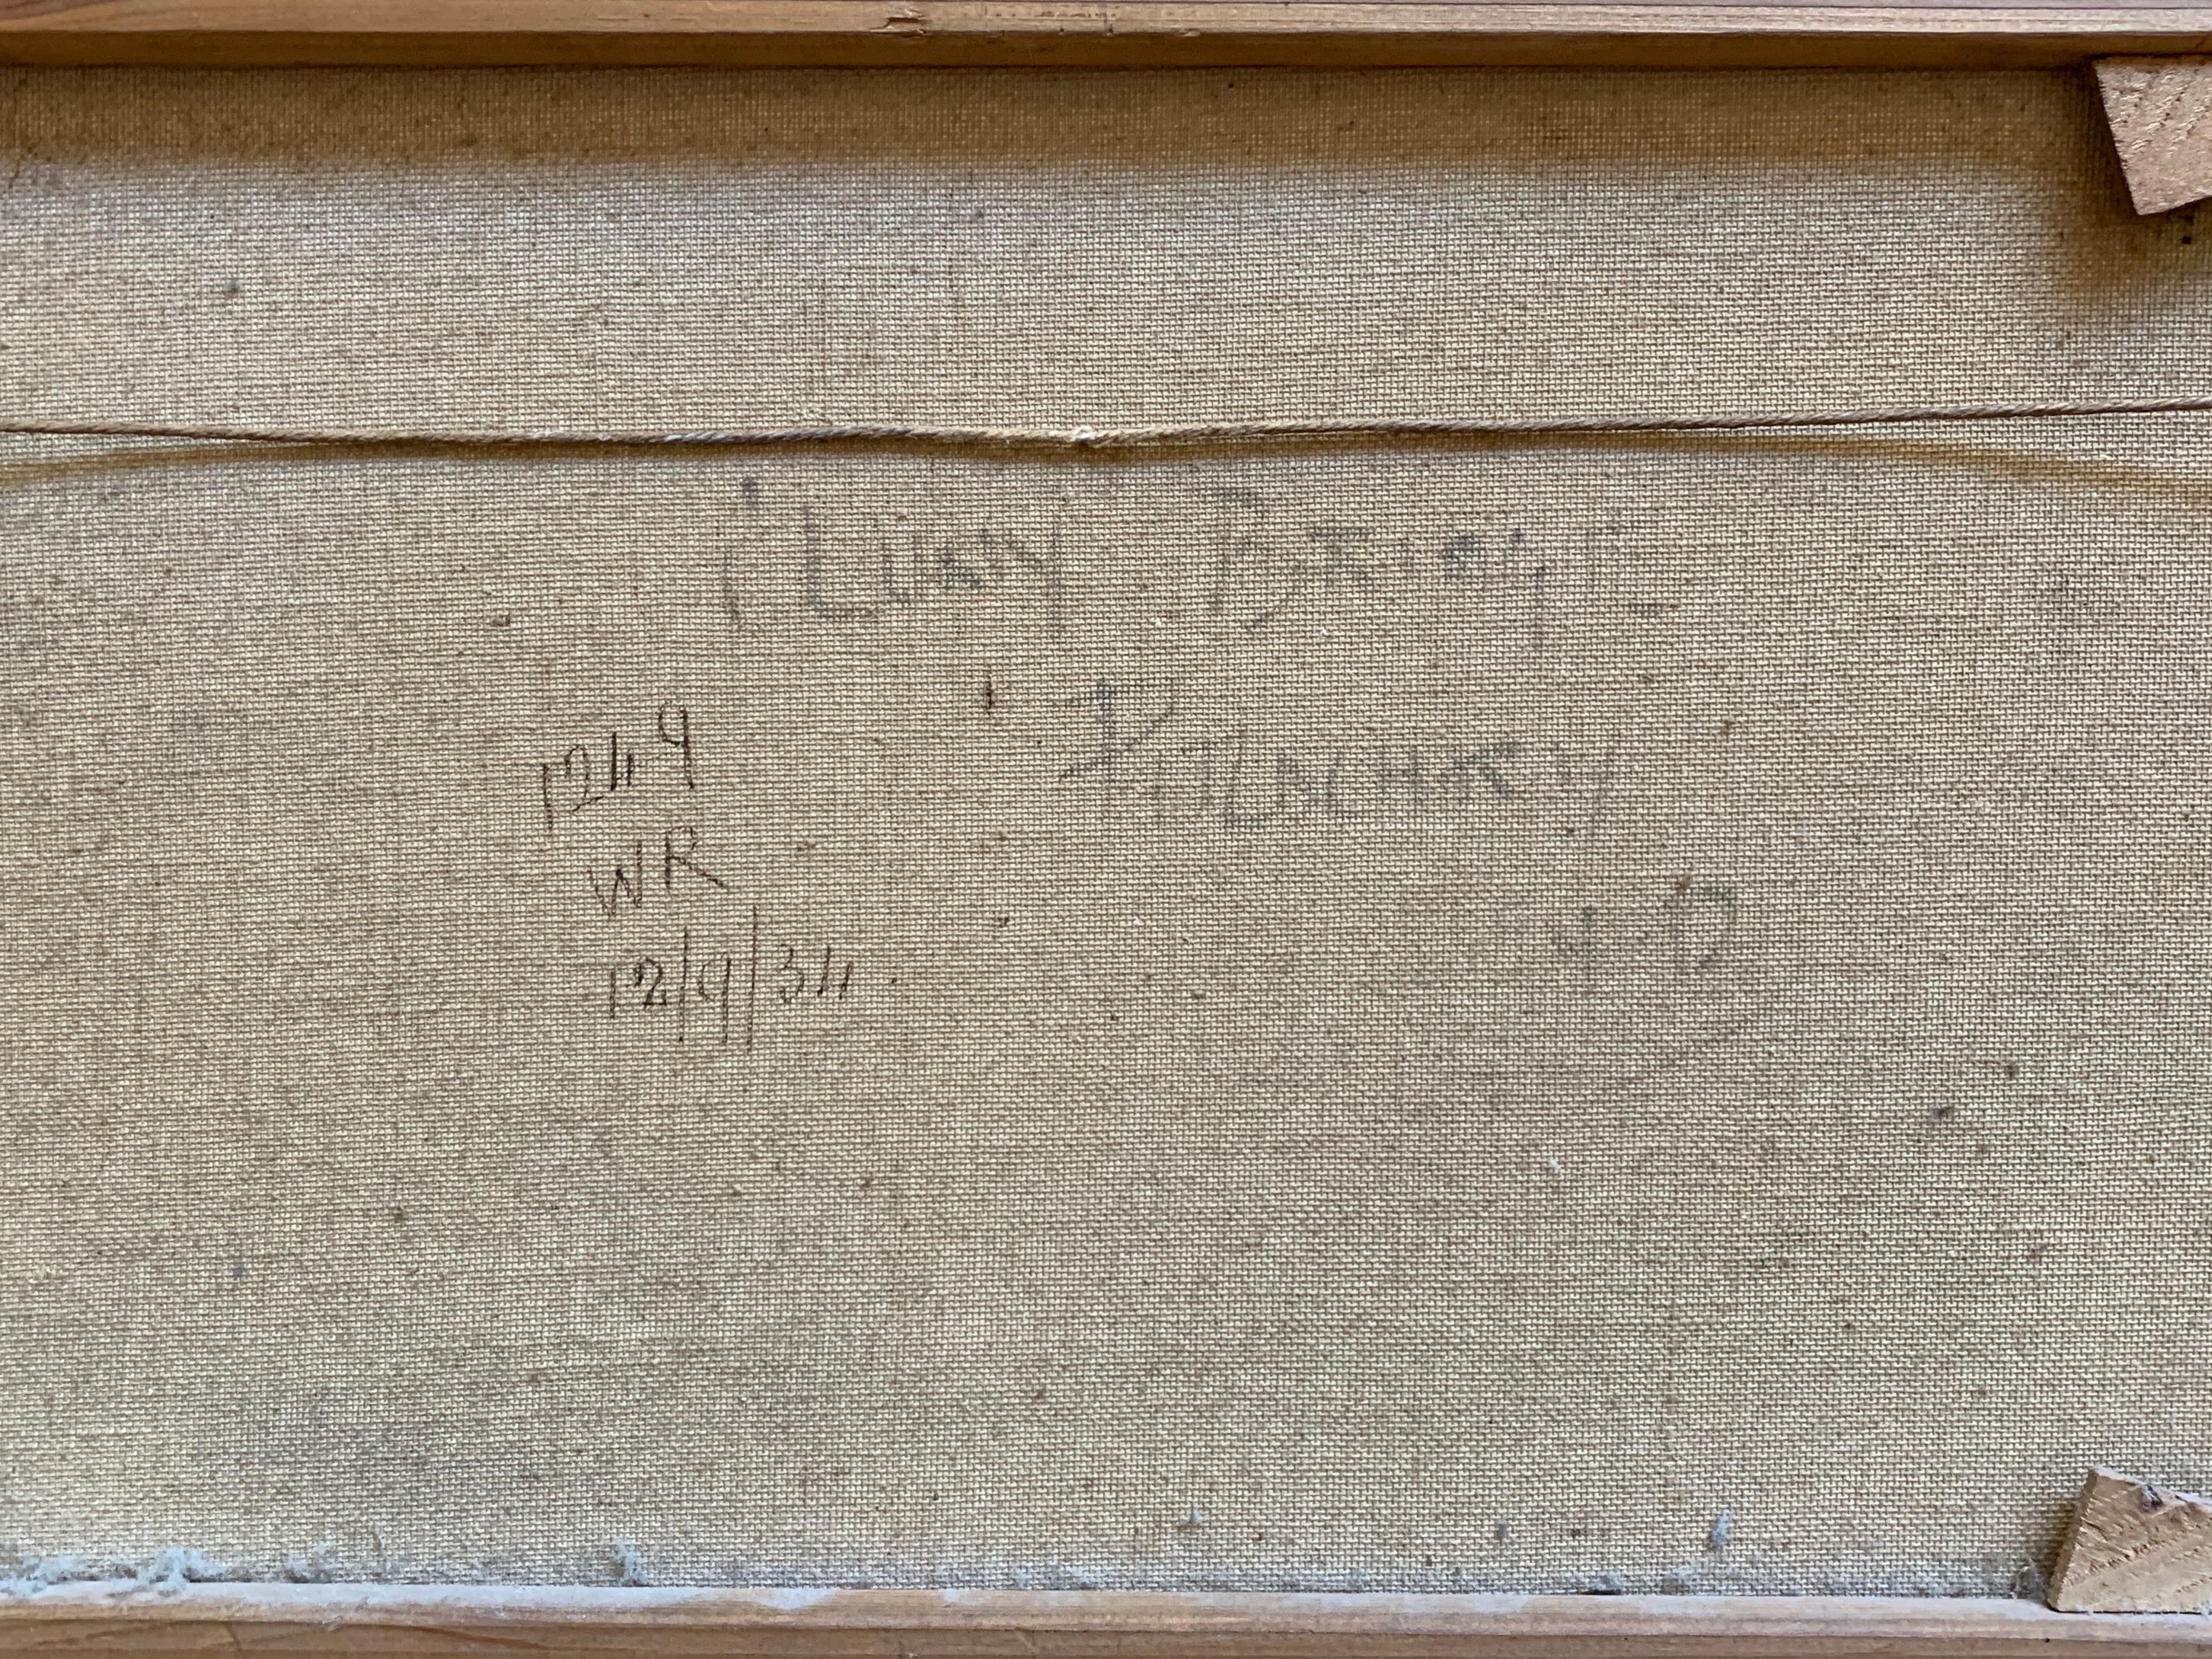 „Clunie Bridge, Pitlochry“
von F. E. Jamieson (Brite, 1895-1950)
Signiert, untere Ecke mit Pseudonym „W. Richards“
verso auf Leinwand betitelt 
Ölgemälde auf Leinwand, gerahmt

Leinwand: 12 x 20 Zoll
Gerahmt: 15,5 x 23,5 Zoll

Antikes Ölgemälde von